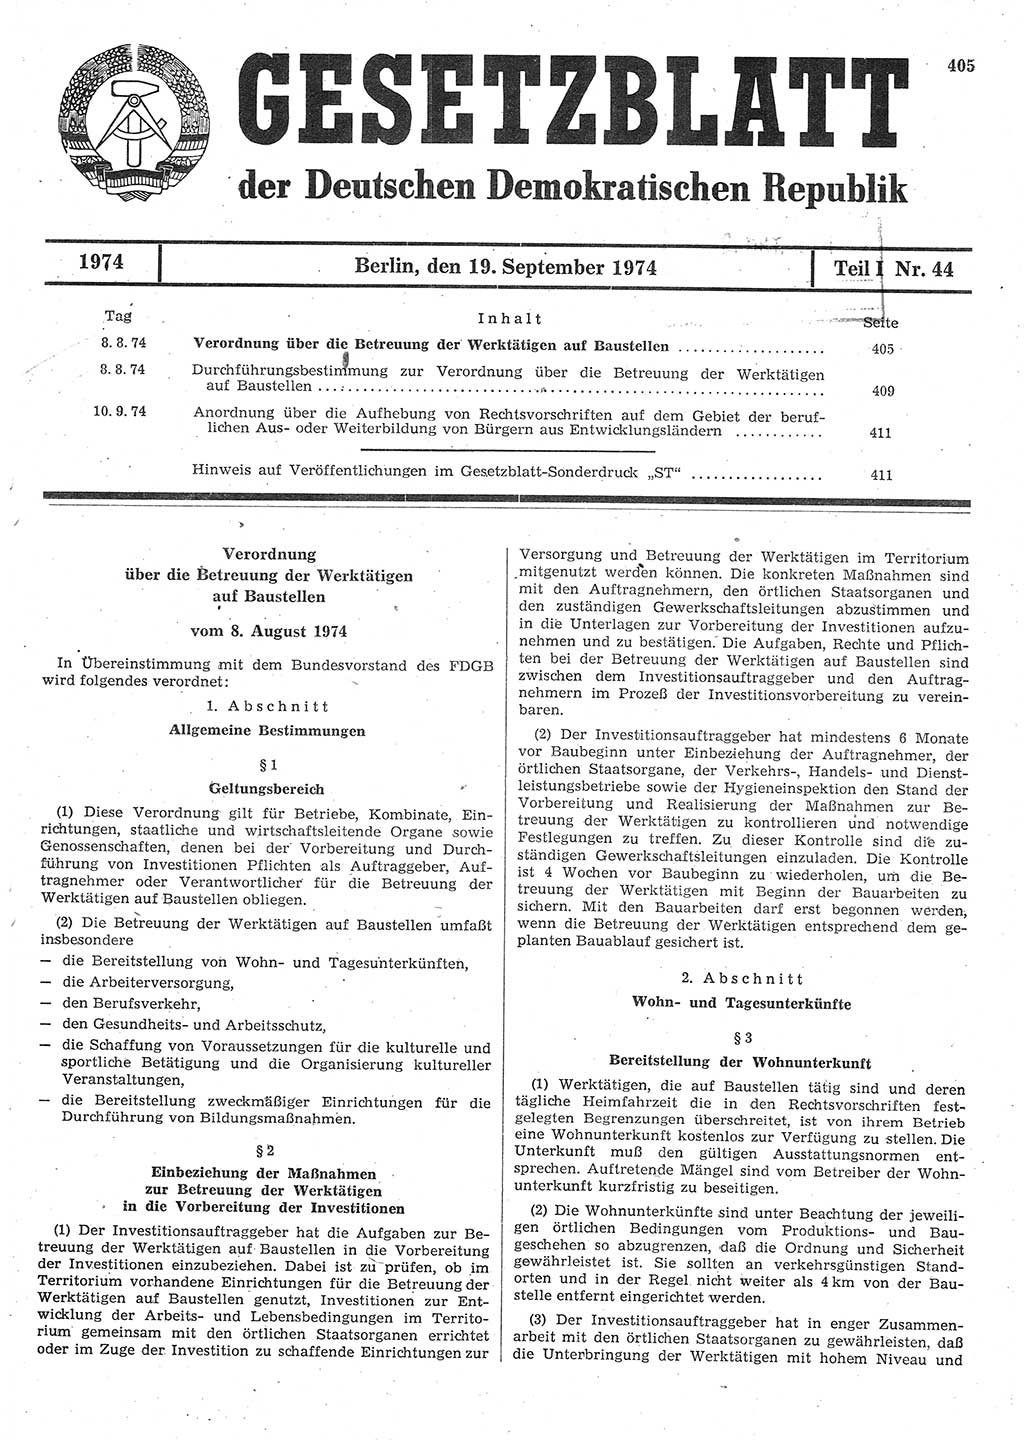 Gesetzblatt (GBl.) der Deutschen Demokratischen Republik (DDR) Teil Ⅰ 1974, Seite 405 (GBl. DDR Ⅰ 1974, S. 405)